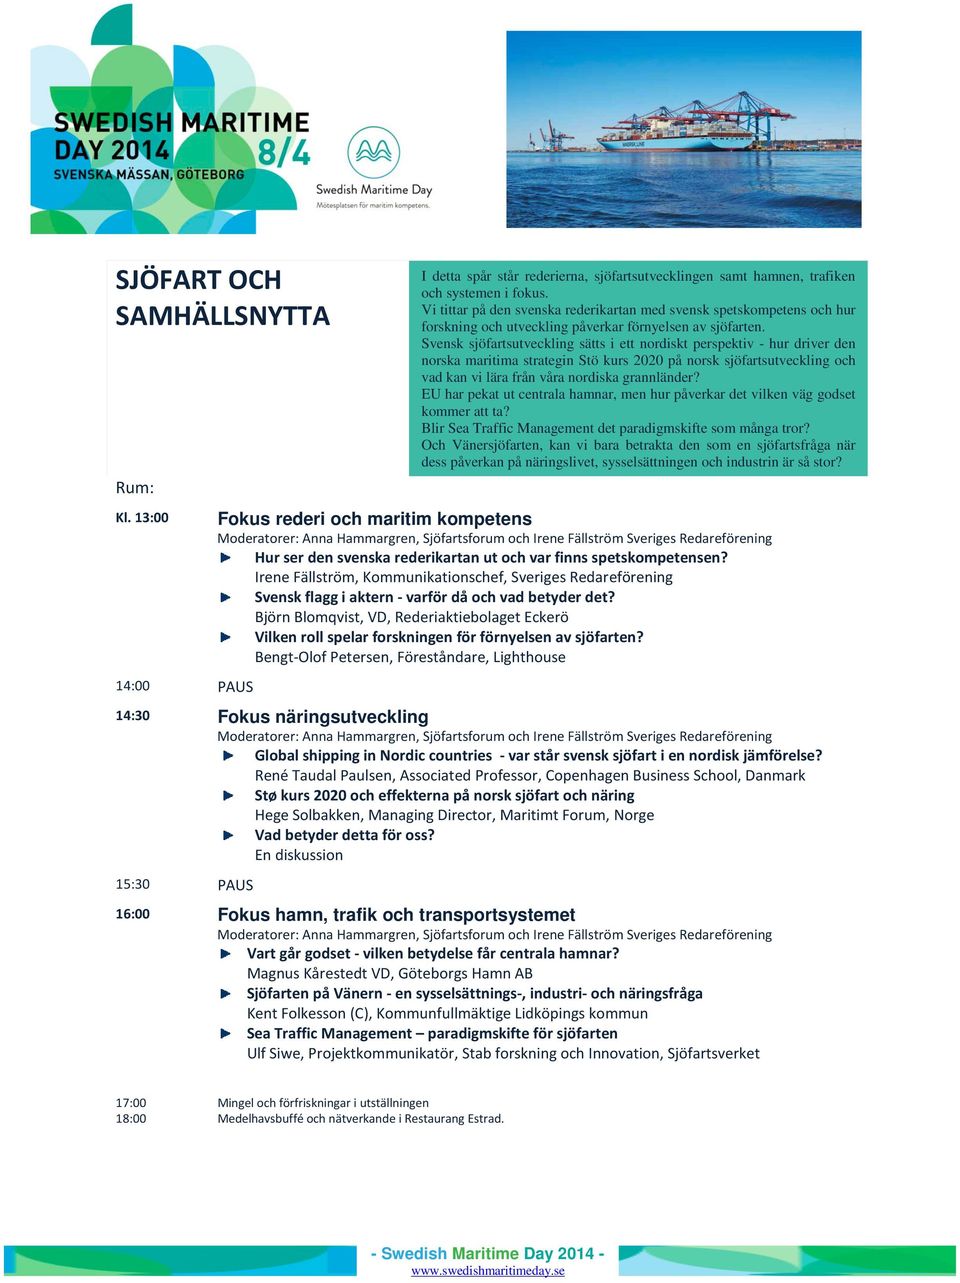 Svensk sjöfartsutveckling sätts i ett nordiskt perspektiv - hur driver den norska maritima strategin Stö kurs 2020 på norsk sjöfartsutveckling och vad kan vi lära från våra nordiska grannländer?